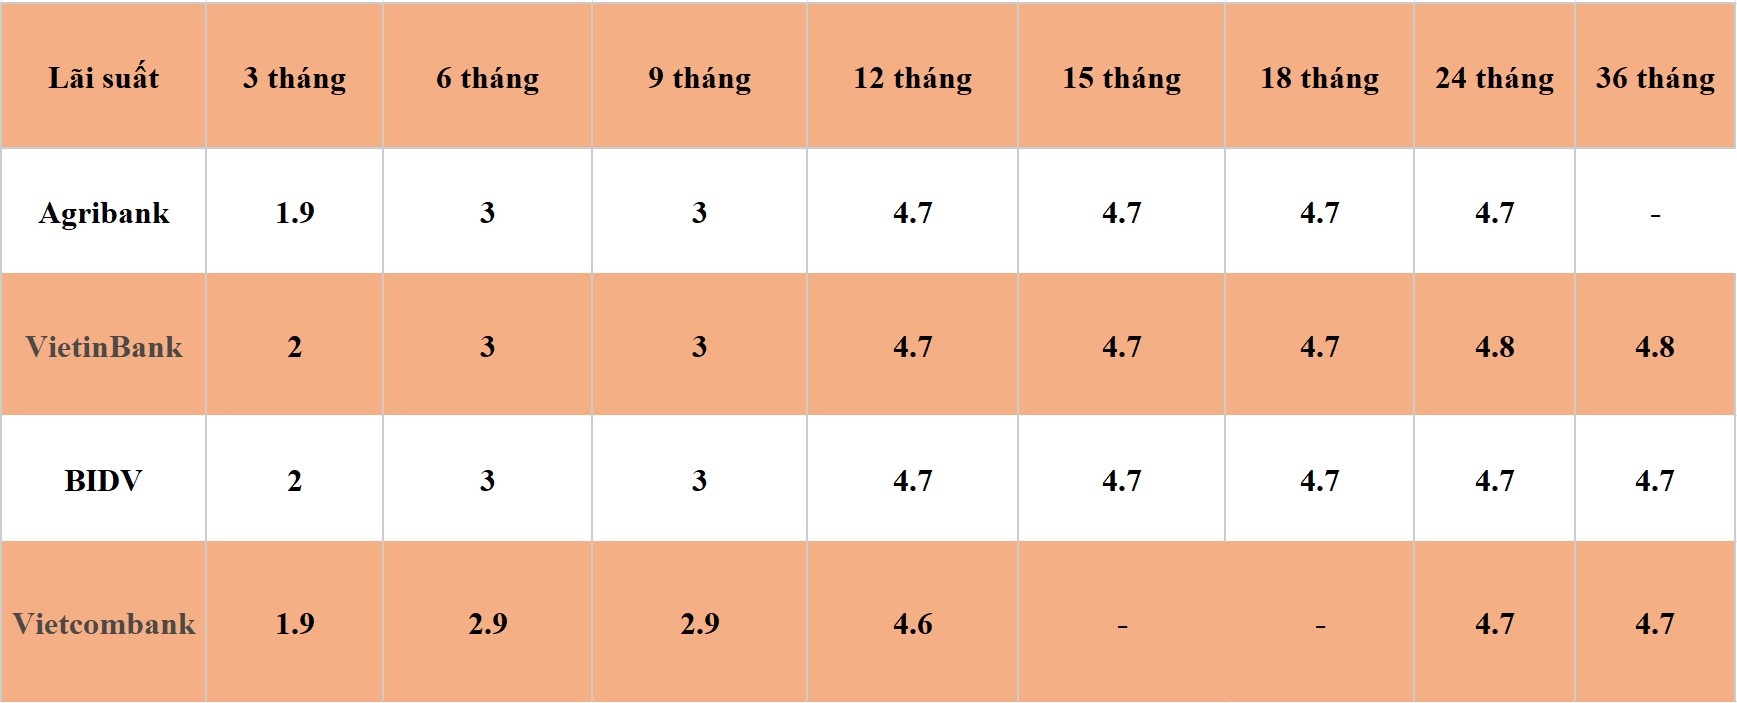 Bảng so sánh lãi suất các kỳ hạn tại Vietcombank, Agribank, VietinBank và BIDV. Số liệu ghi nhận ngày 13.4.2024. Đơn vị tính: %/năm. Bảng: Khương Duy  